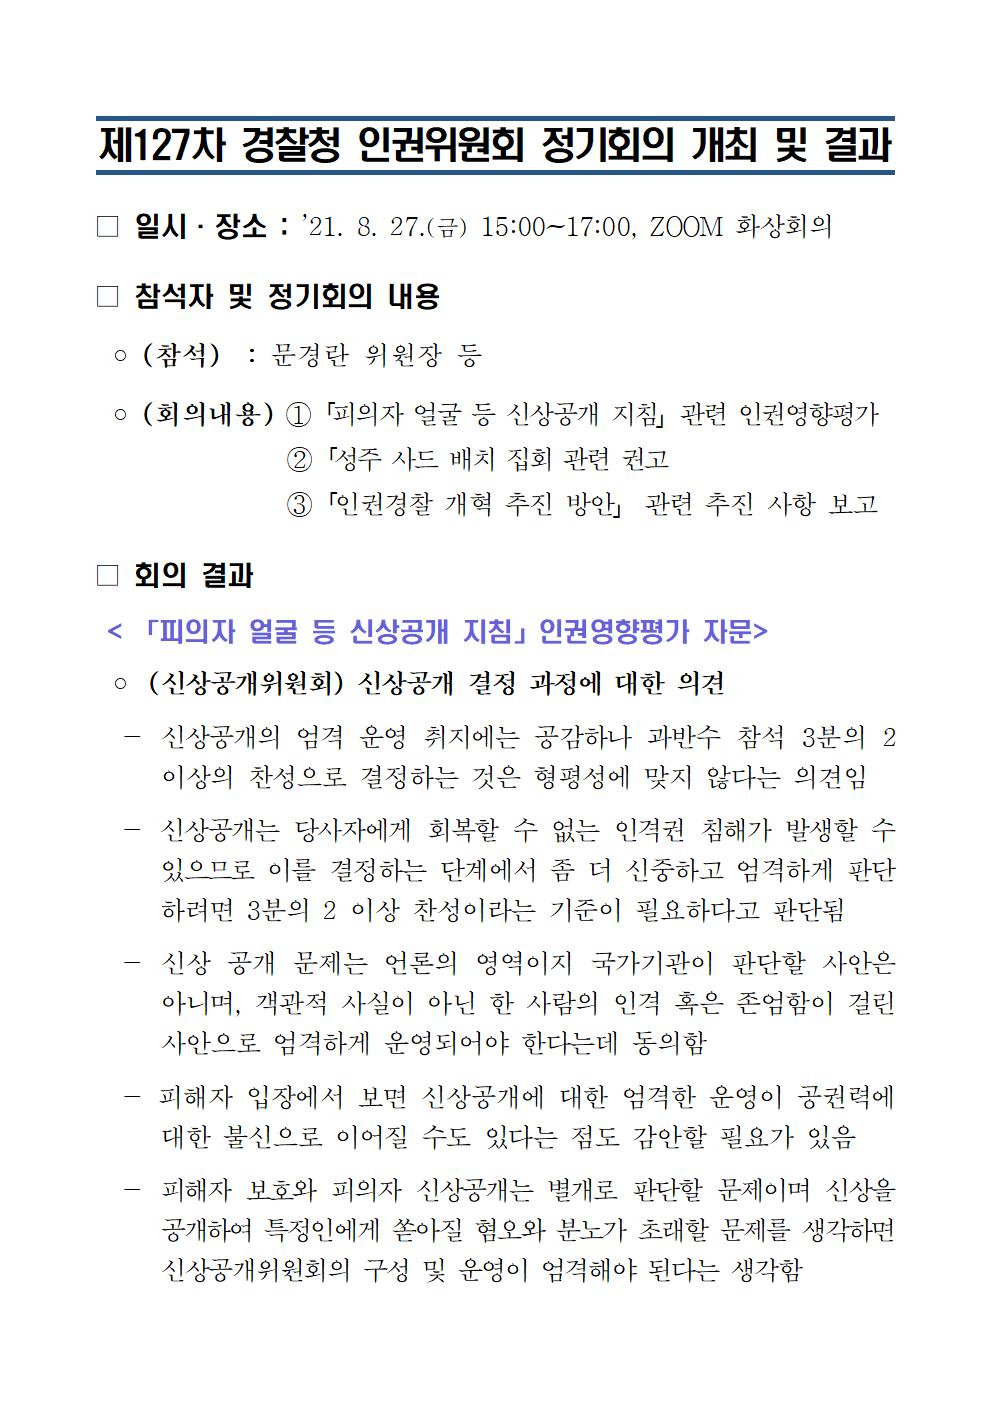 제127차 경찰청 인권위원회 정기회의 개최 및 결과 아래설명